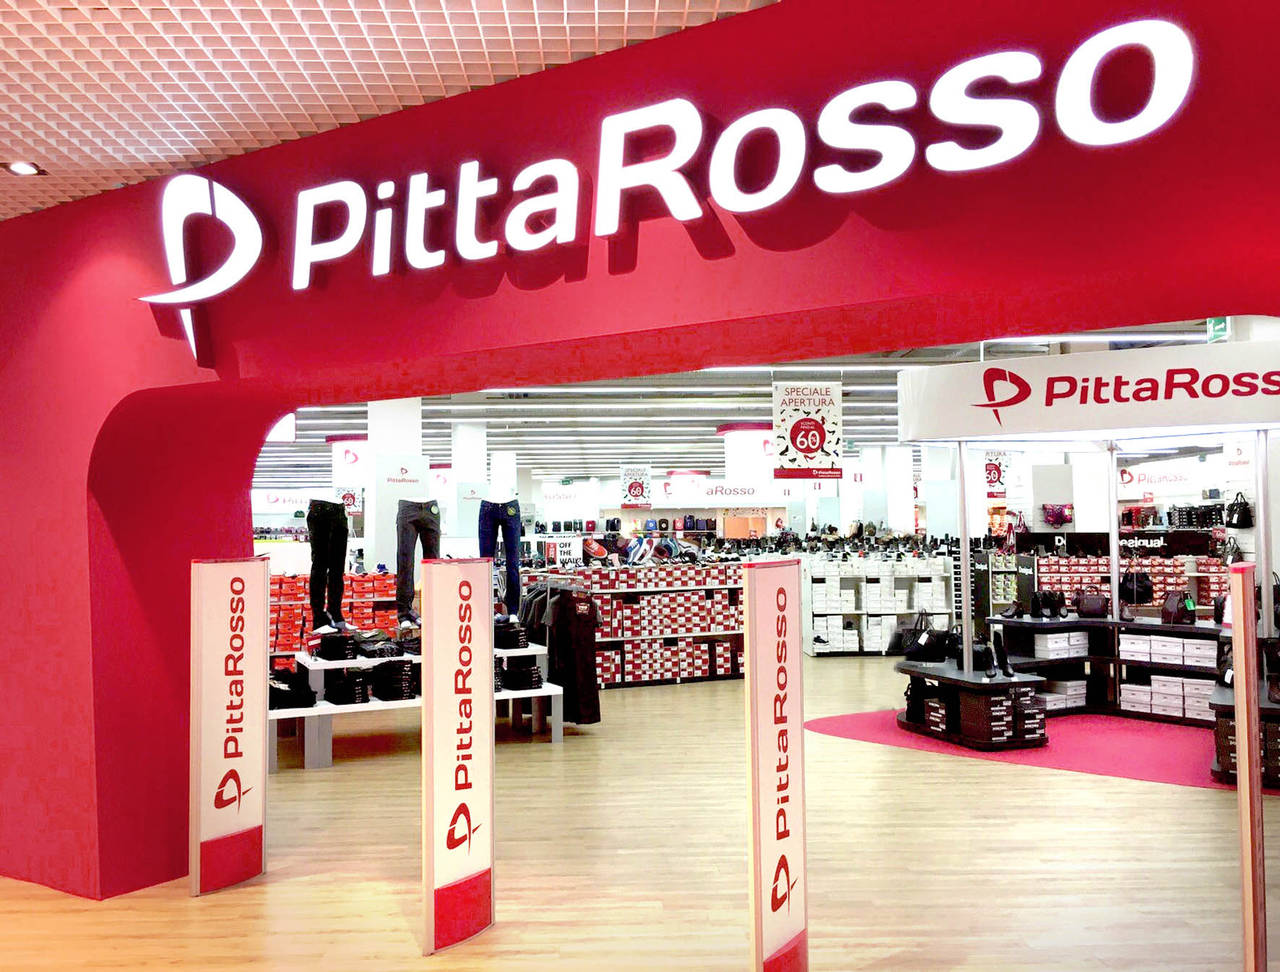 Pittarosso prevede l'apertura di 30 nuovi punti di vendita | Gdoweek